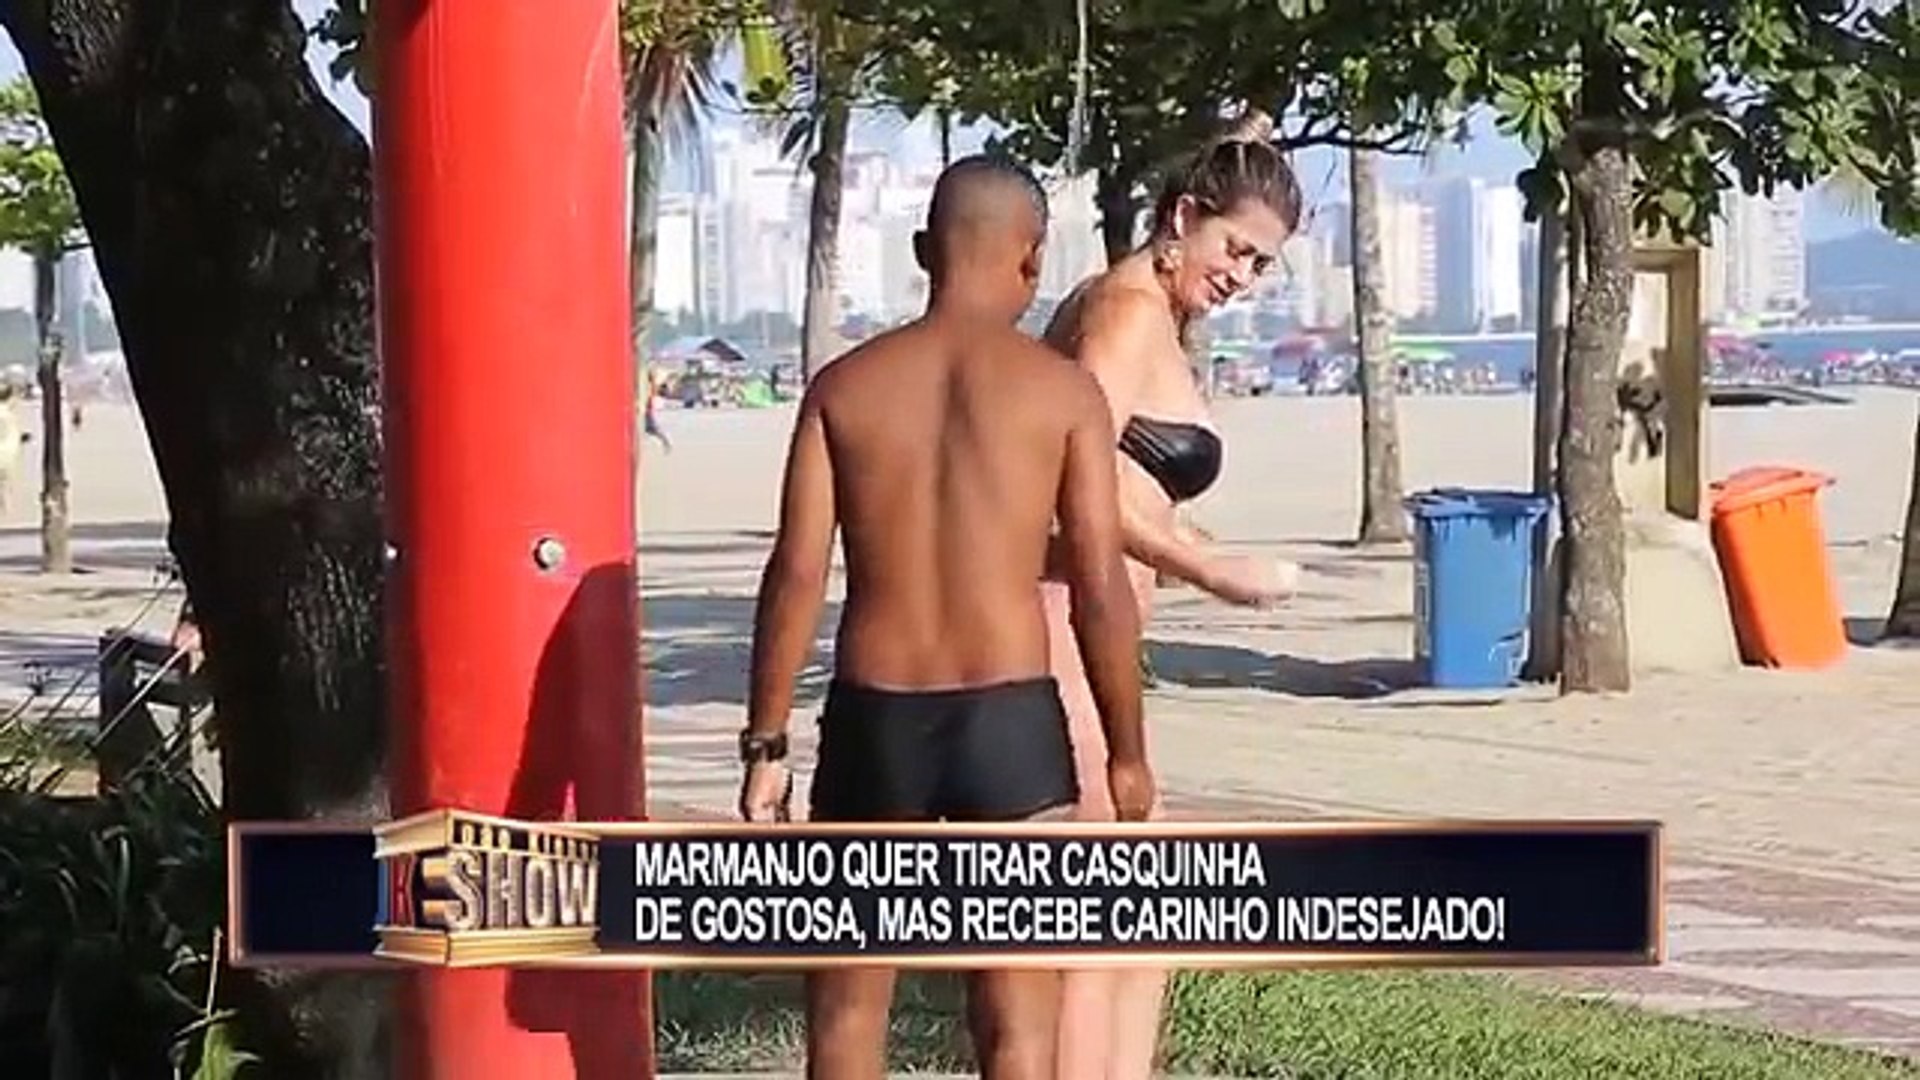 Une femme demande à un homme de lui laver le dos dans une douche de plage,  puis d'échanger les rôles, et là, c'est le drame... - Vidéo Dailymotion